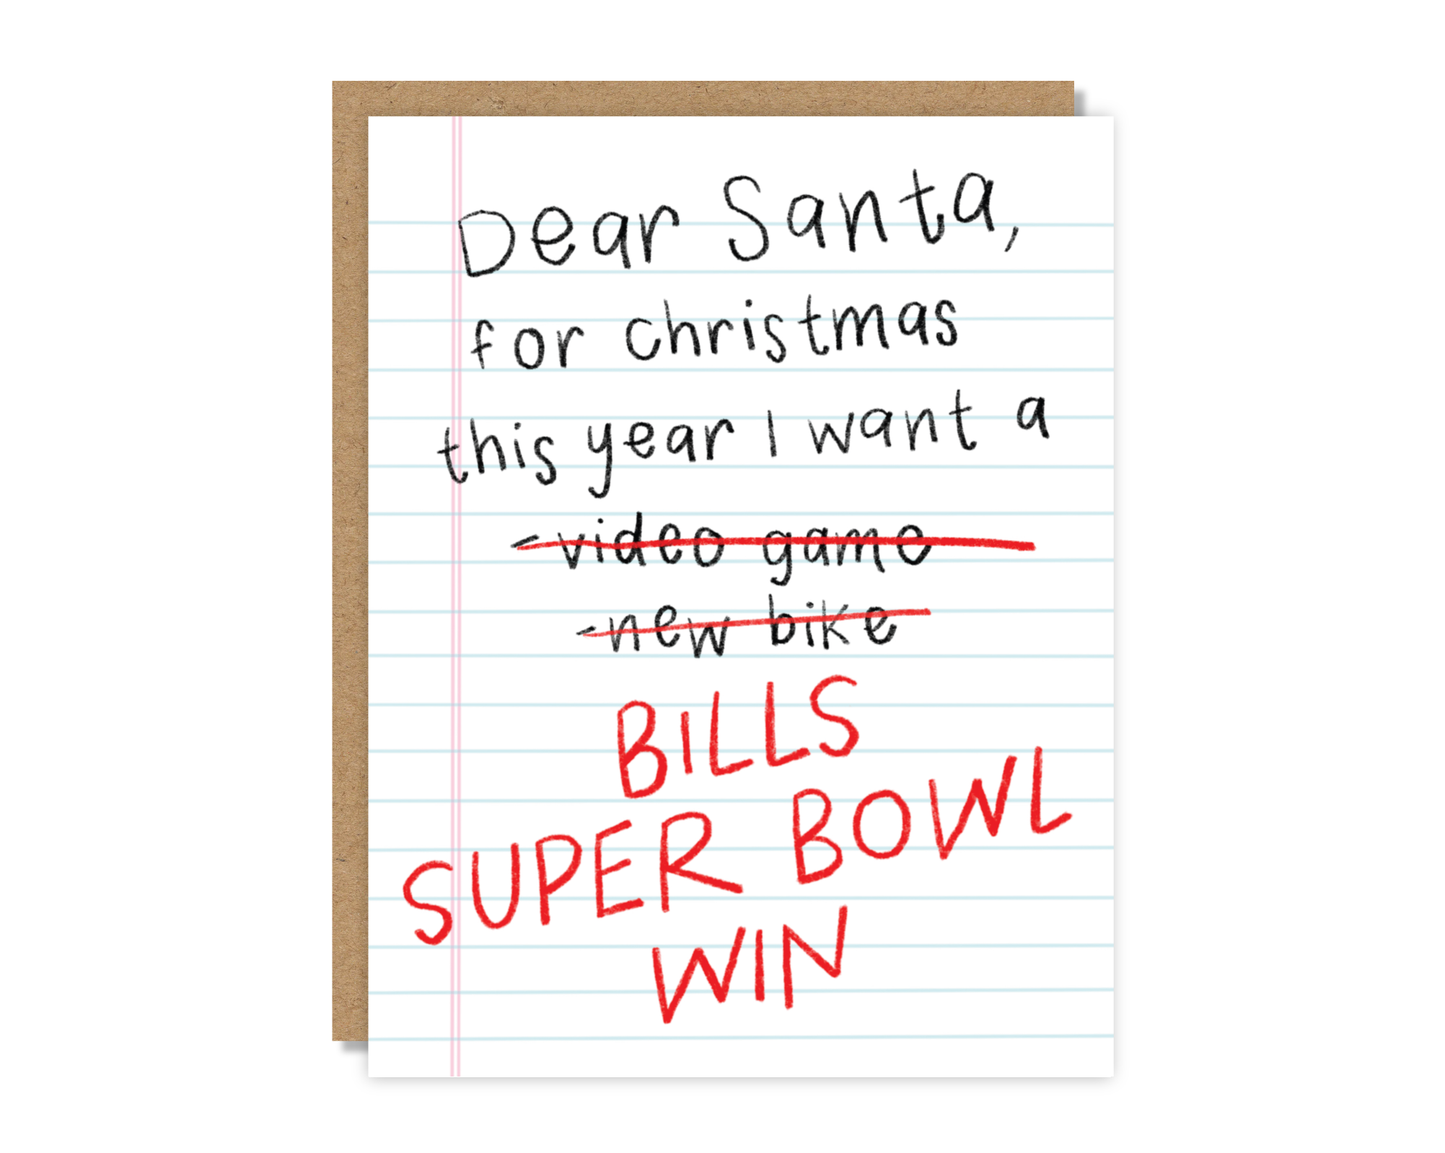 Dear Santa, Super Bowl Win